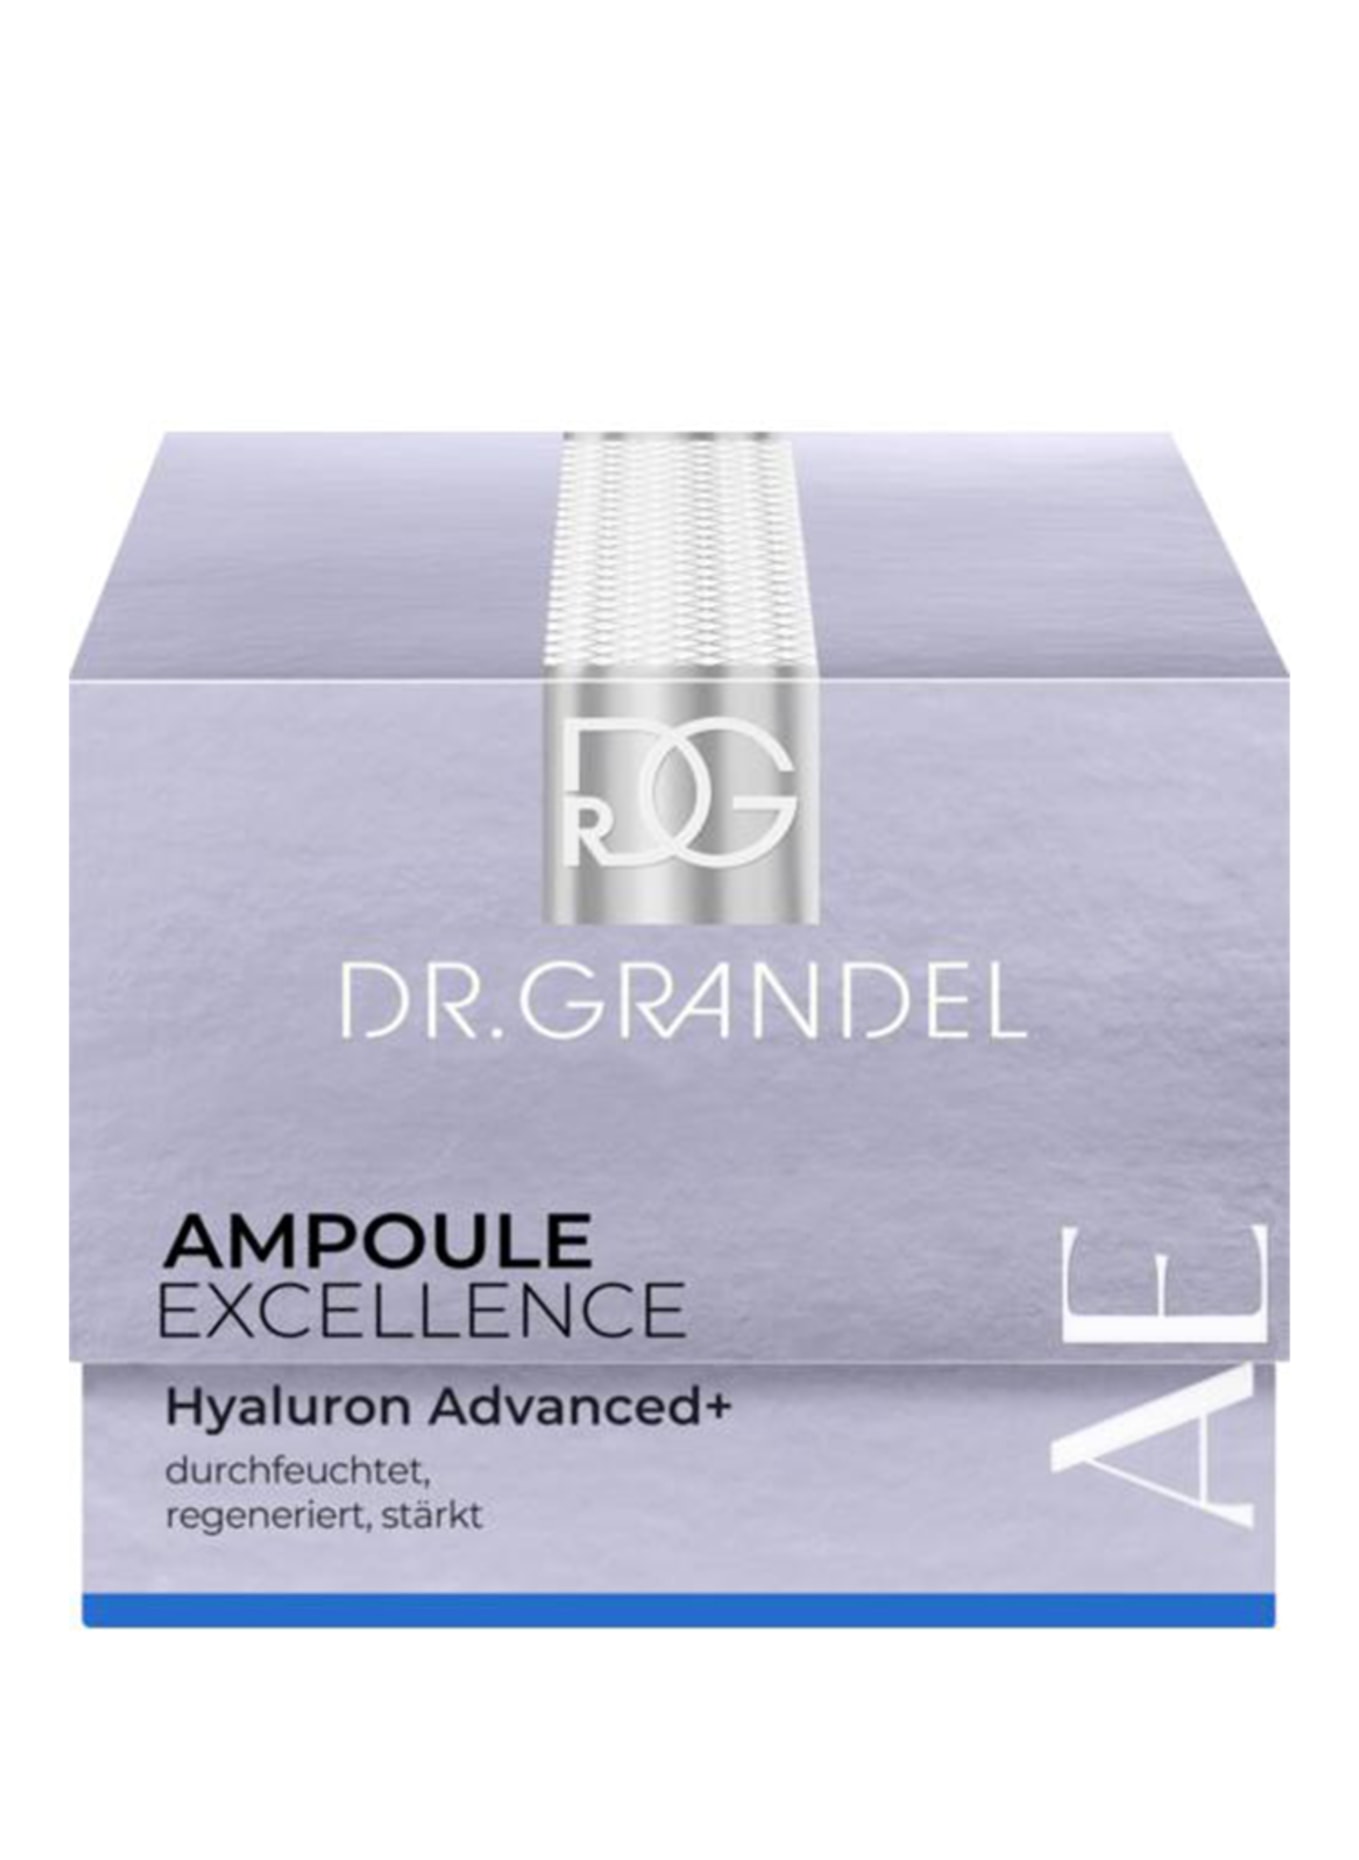 DR. GRANDEL AMPOULE EXCELLENCE HYALURON ADVANCED+ (Bild 1)